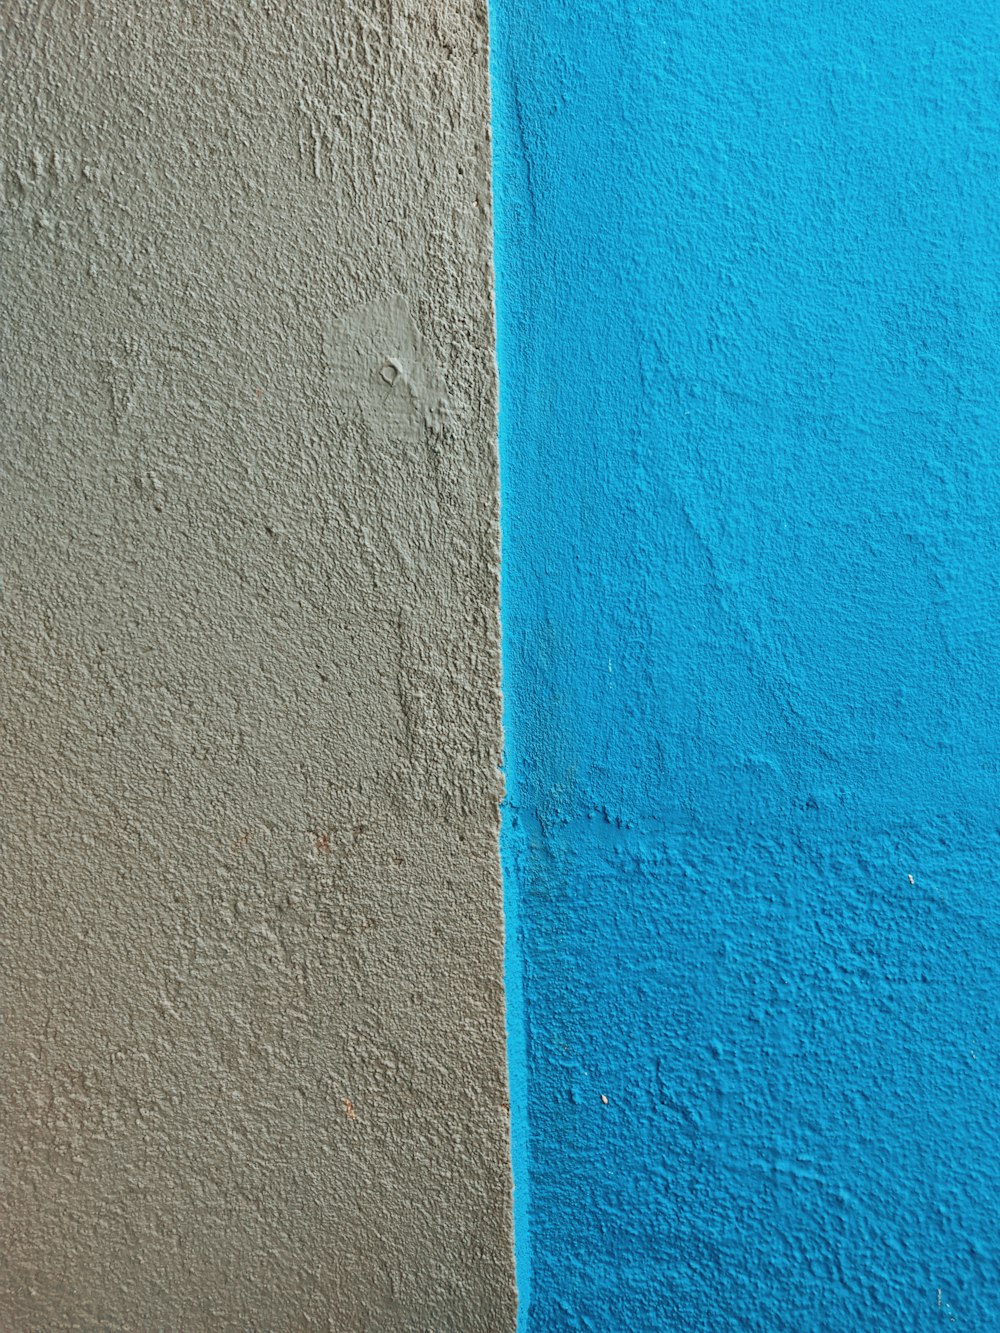 parede pintada azul e laranja